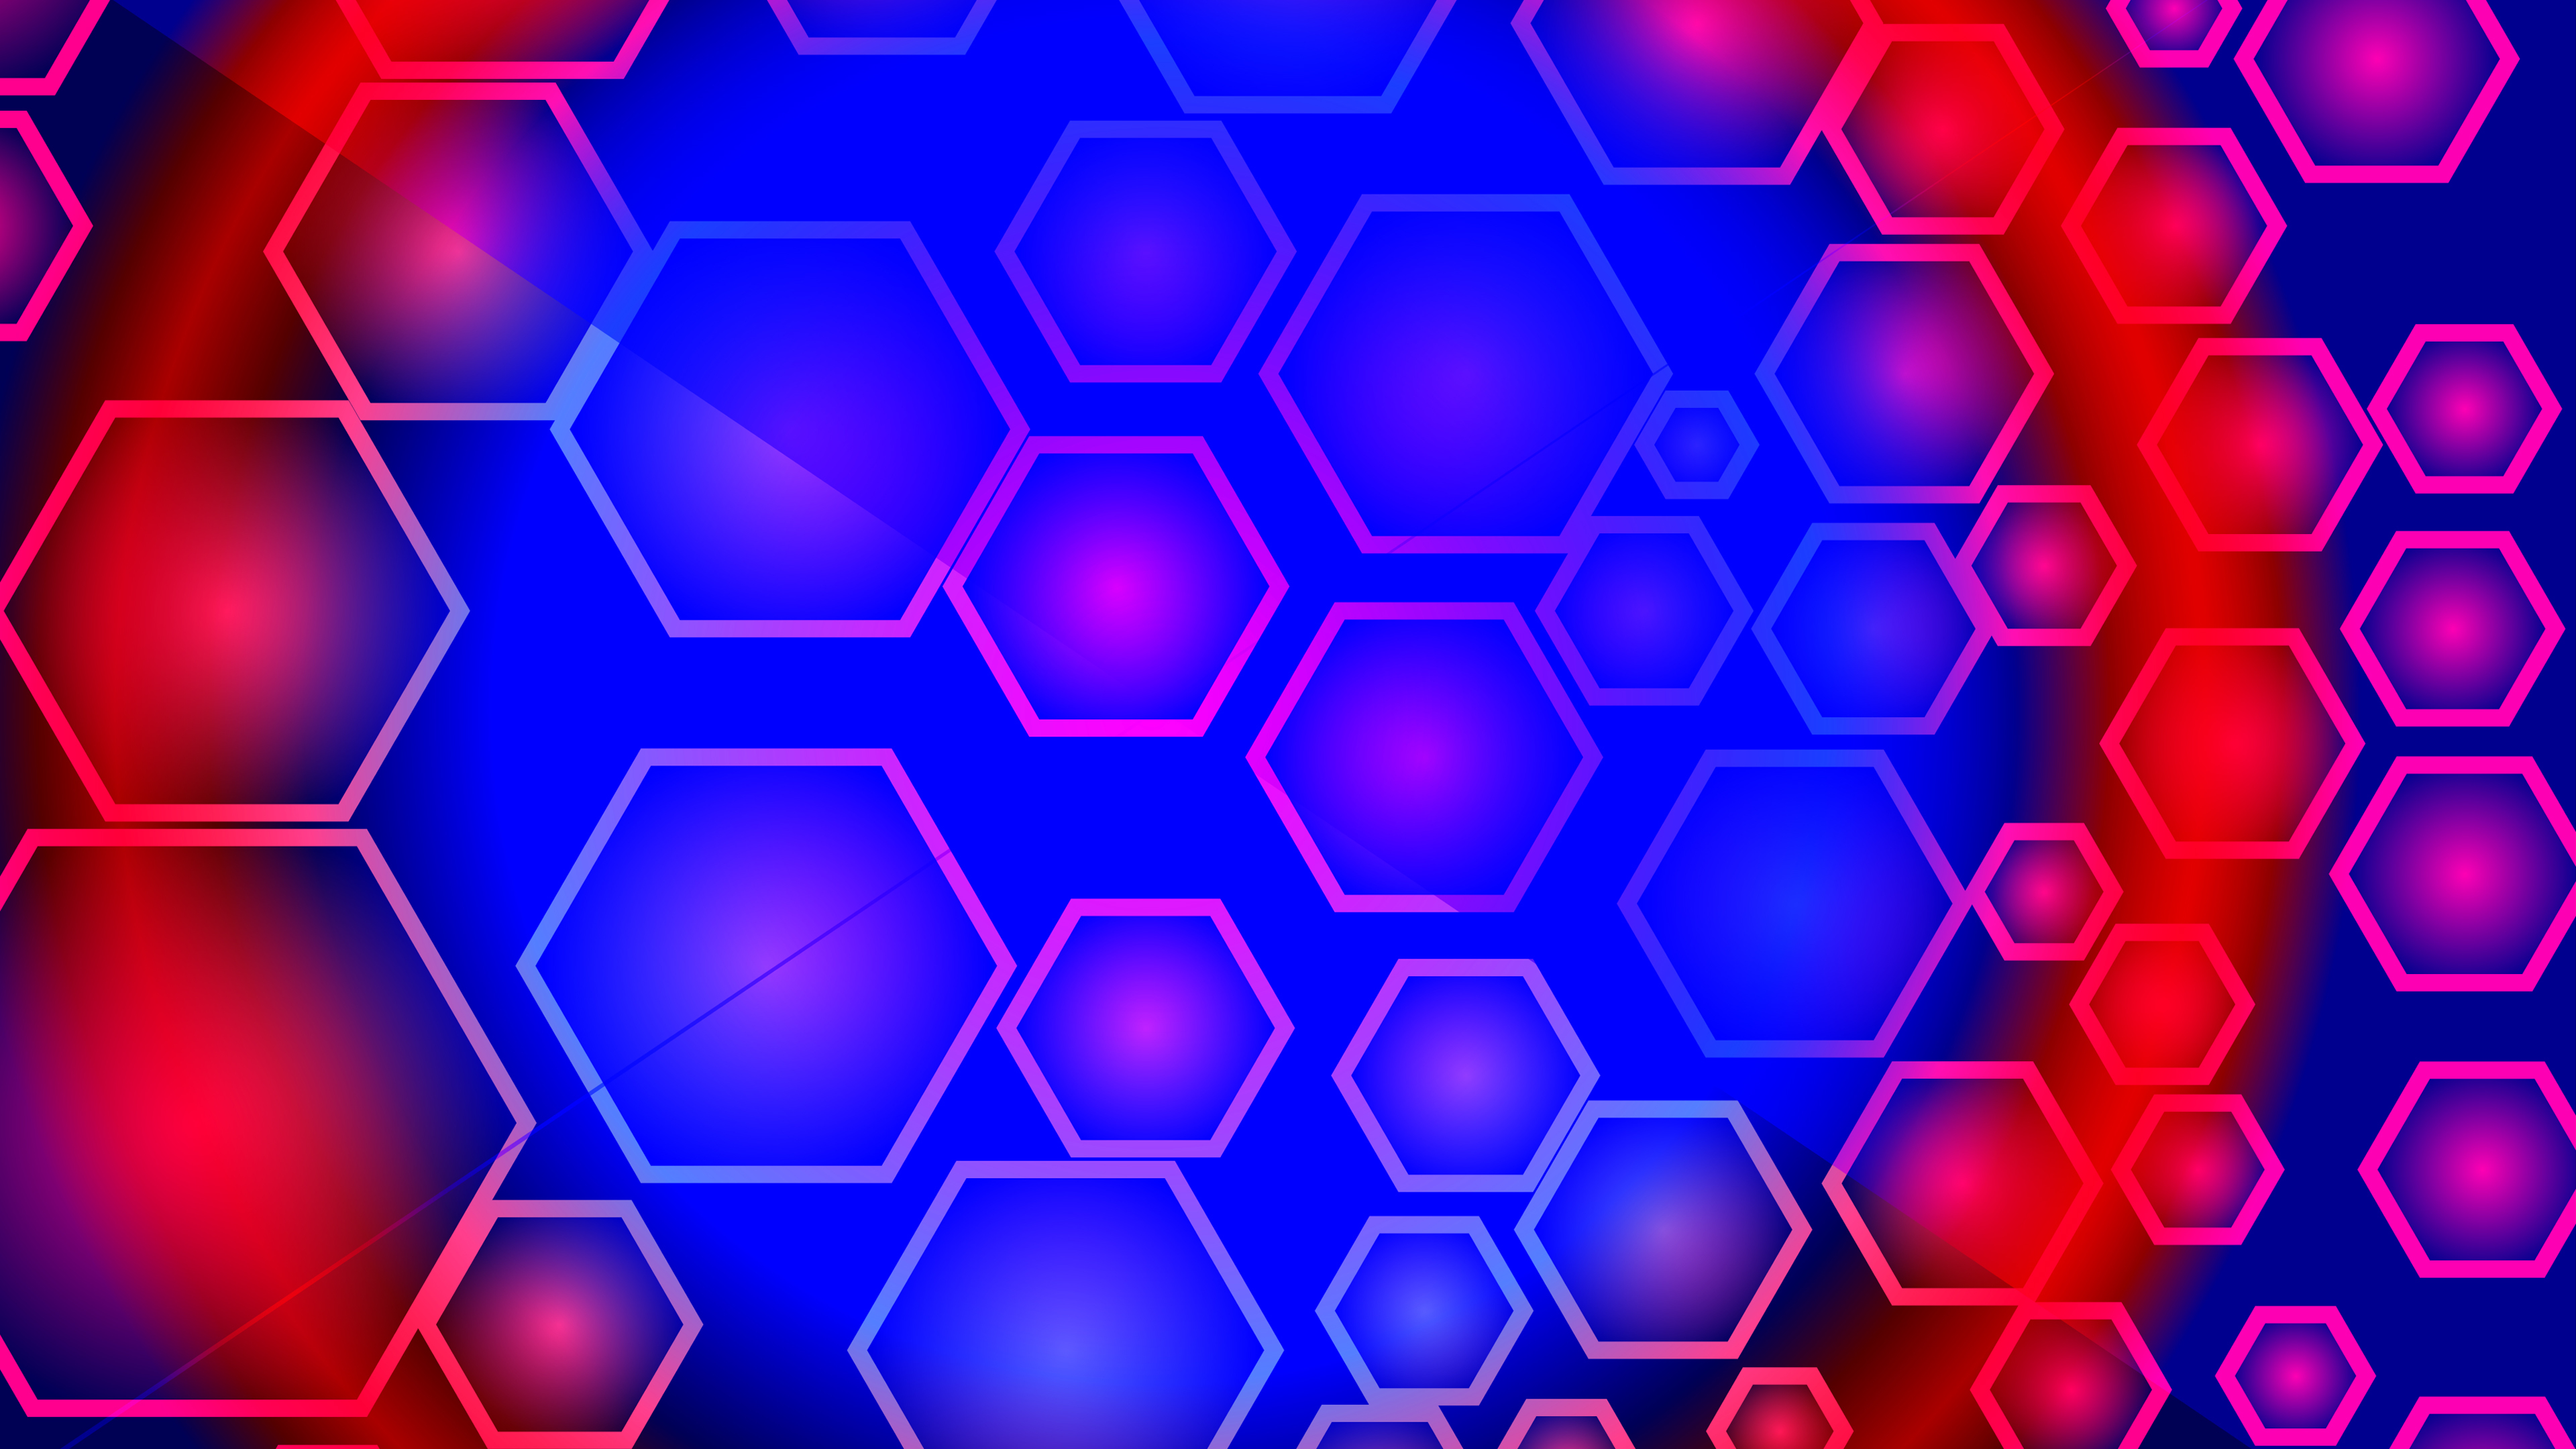 Download wallpaper 3840x2160 abstract, red-blue hexagon 4k wallpaper, uhd  wallpaper, 16:9 widescreen 3840x2160 hd background, 26476